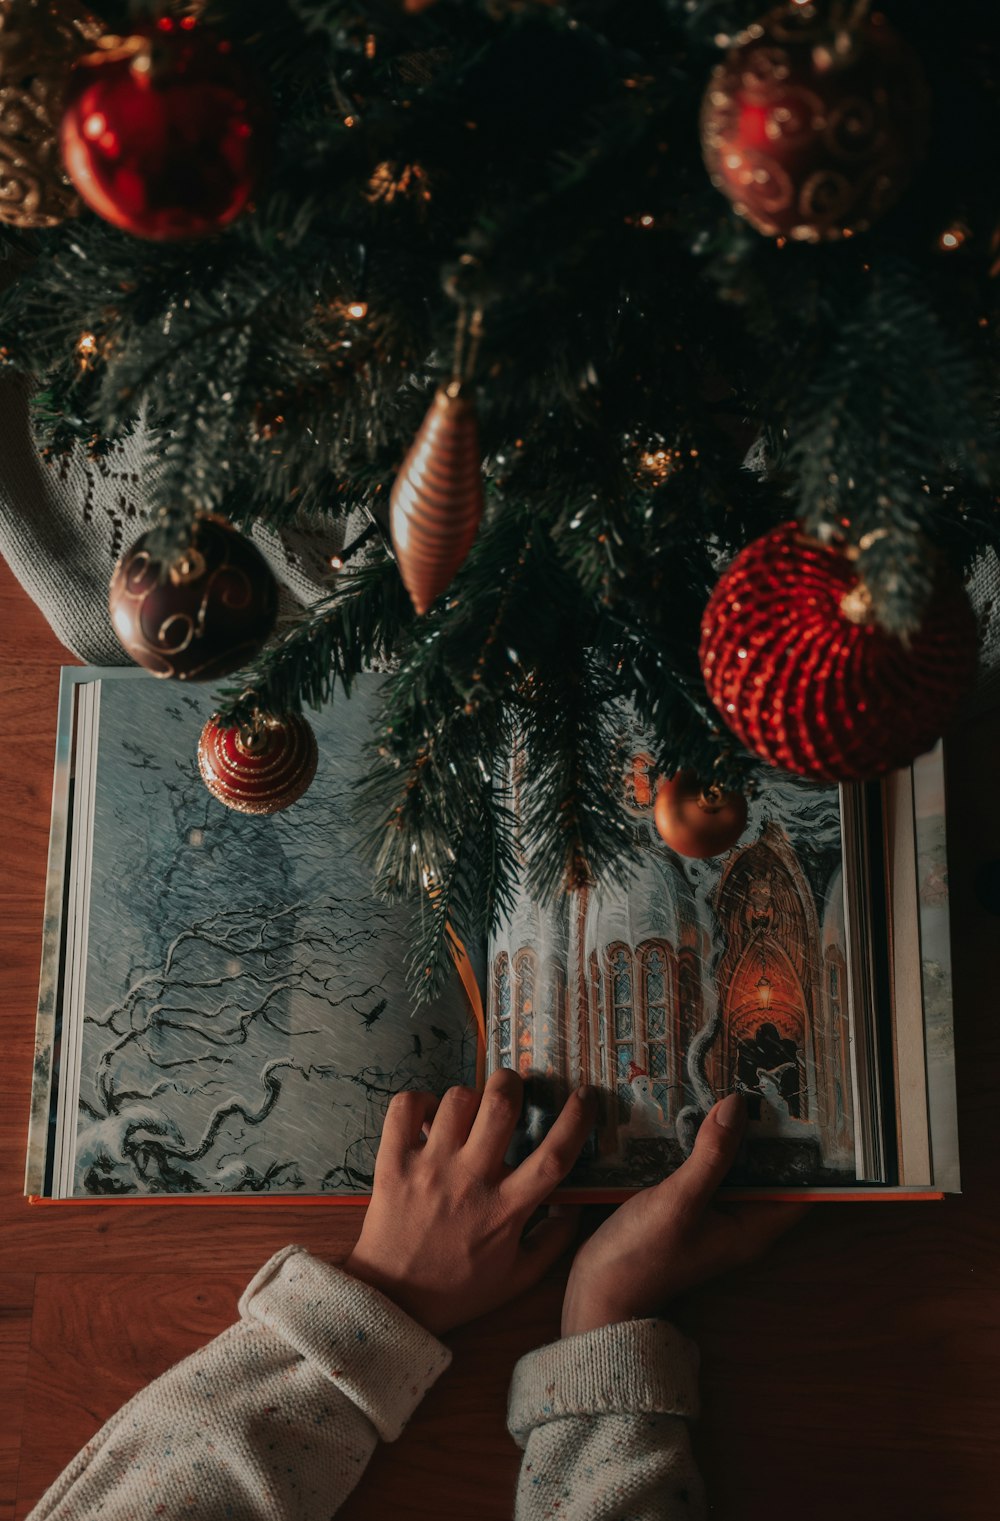 Une personne lit un livre sous un sapin de Noël